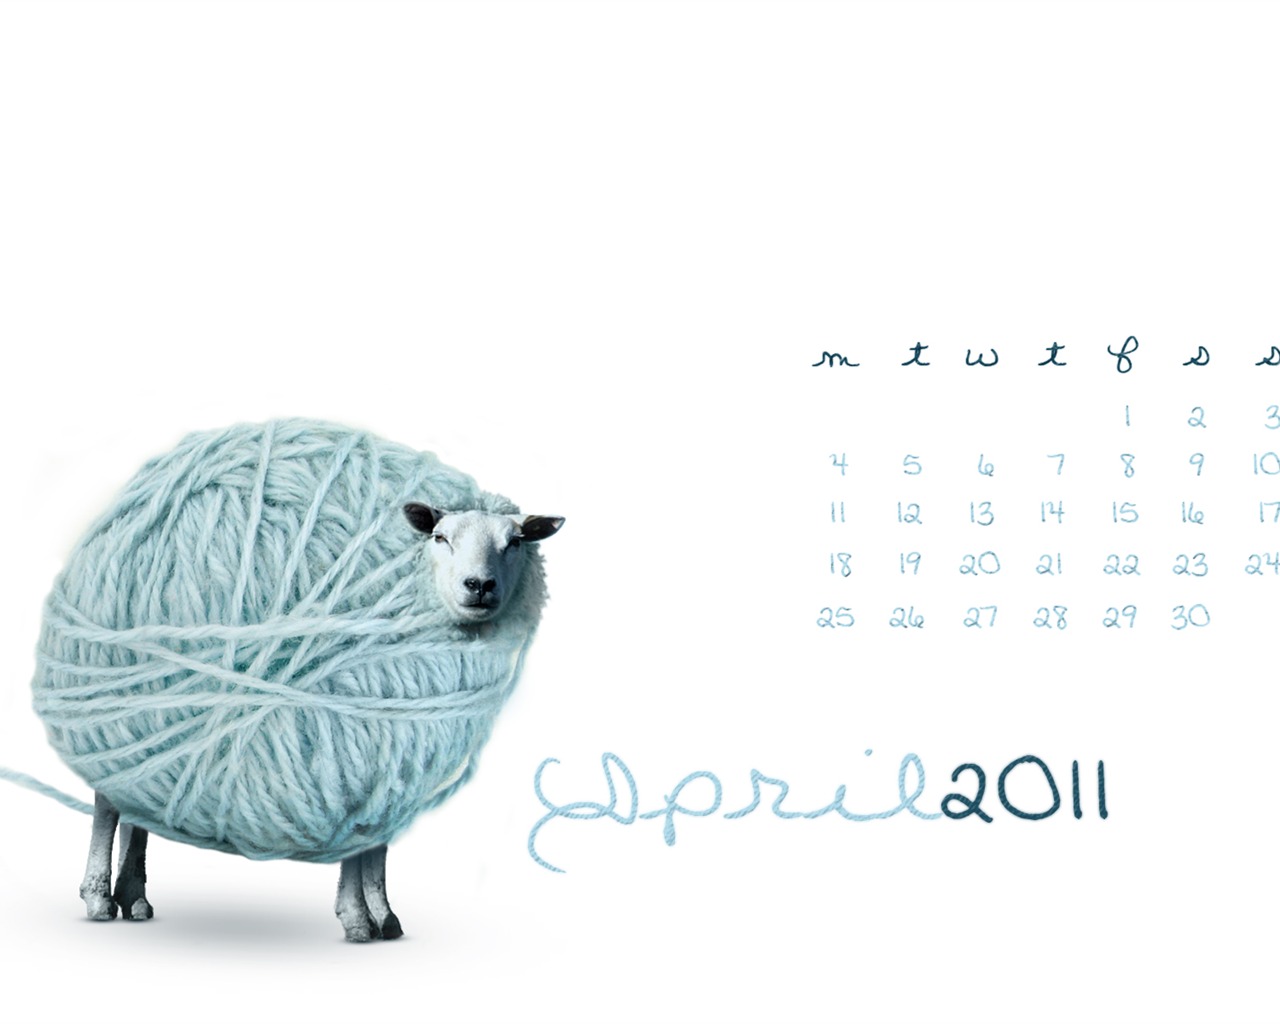 April 2011 Calendar Wallpaper (2) #3 - 1280x1024